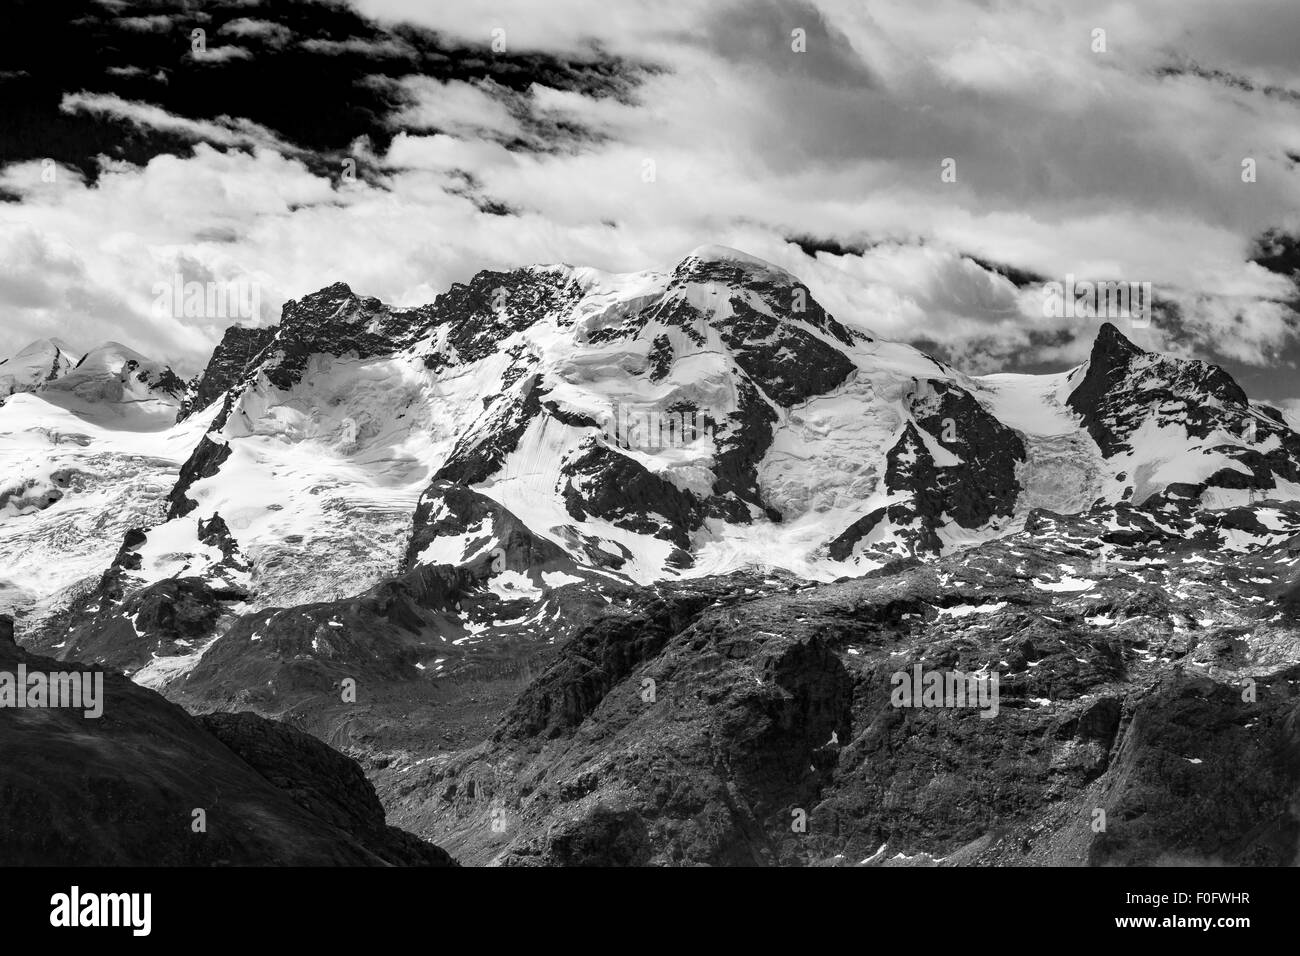 Le vette del versante nord del massiccio del Breithorn nel gruppo del Monte Rosa. Paesaggio di montagna bianco nero. Alpi svizzere. Europa. Foto Stock